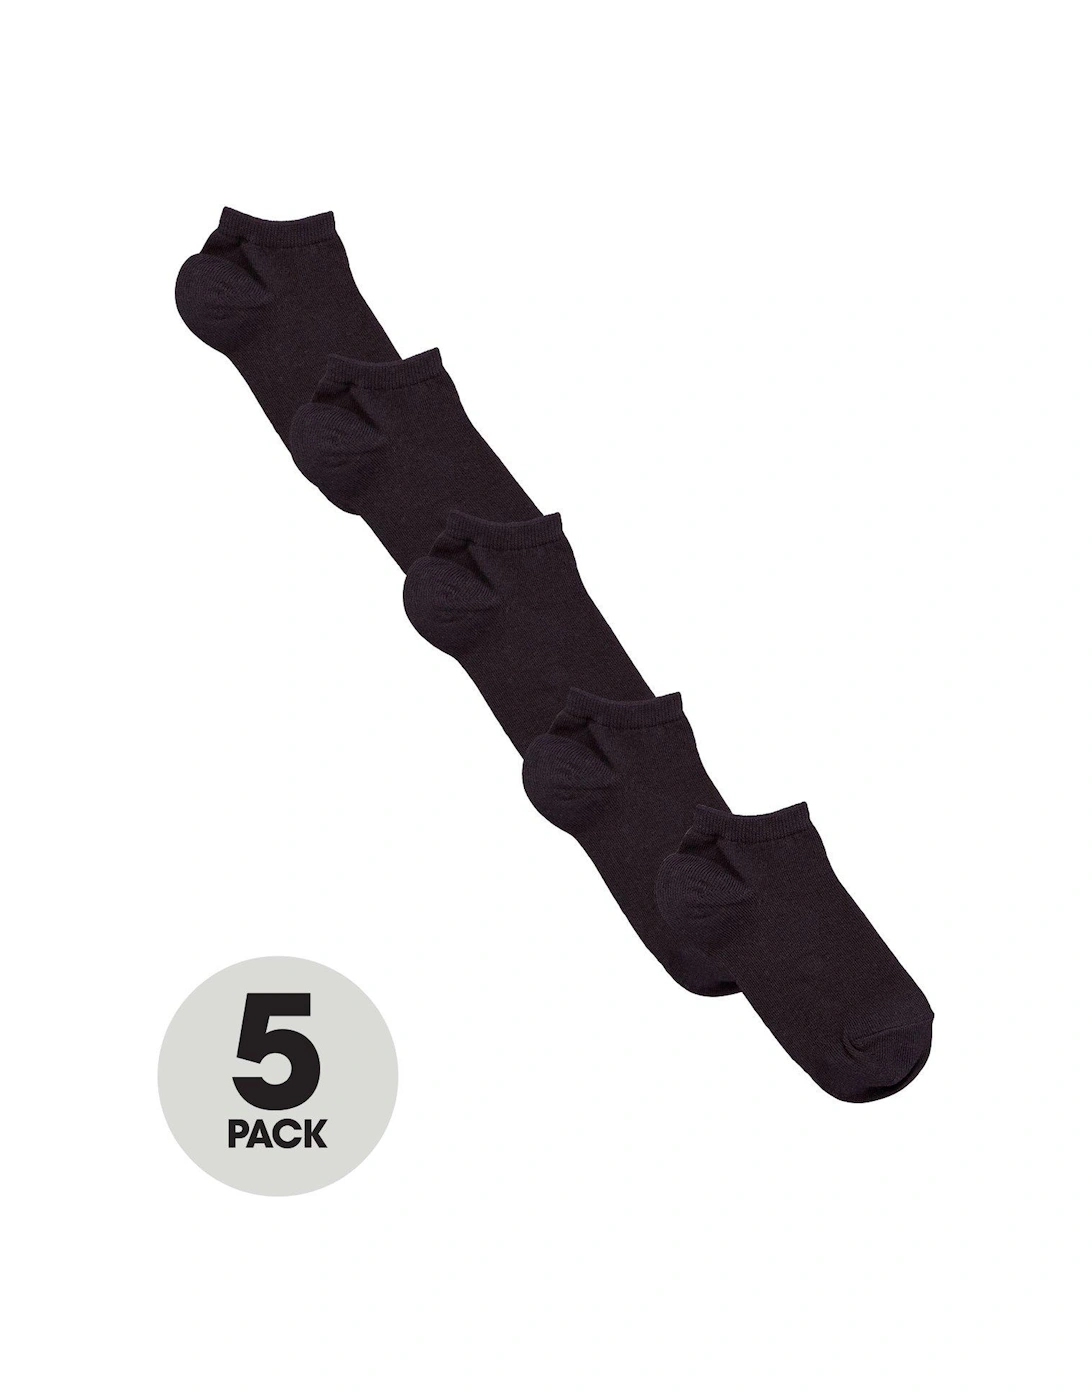 5 Pack Unisex Trainer Liner Socks - Black, 2 of 1